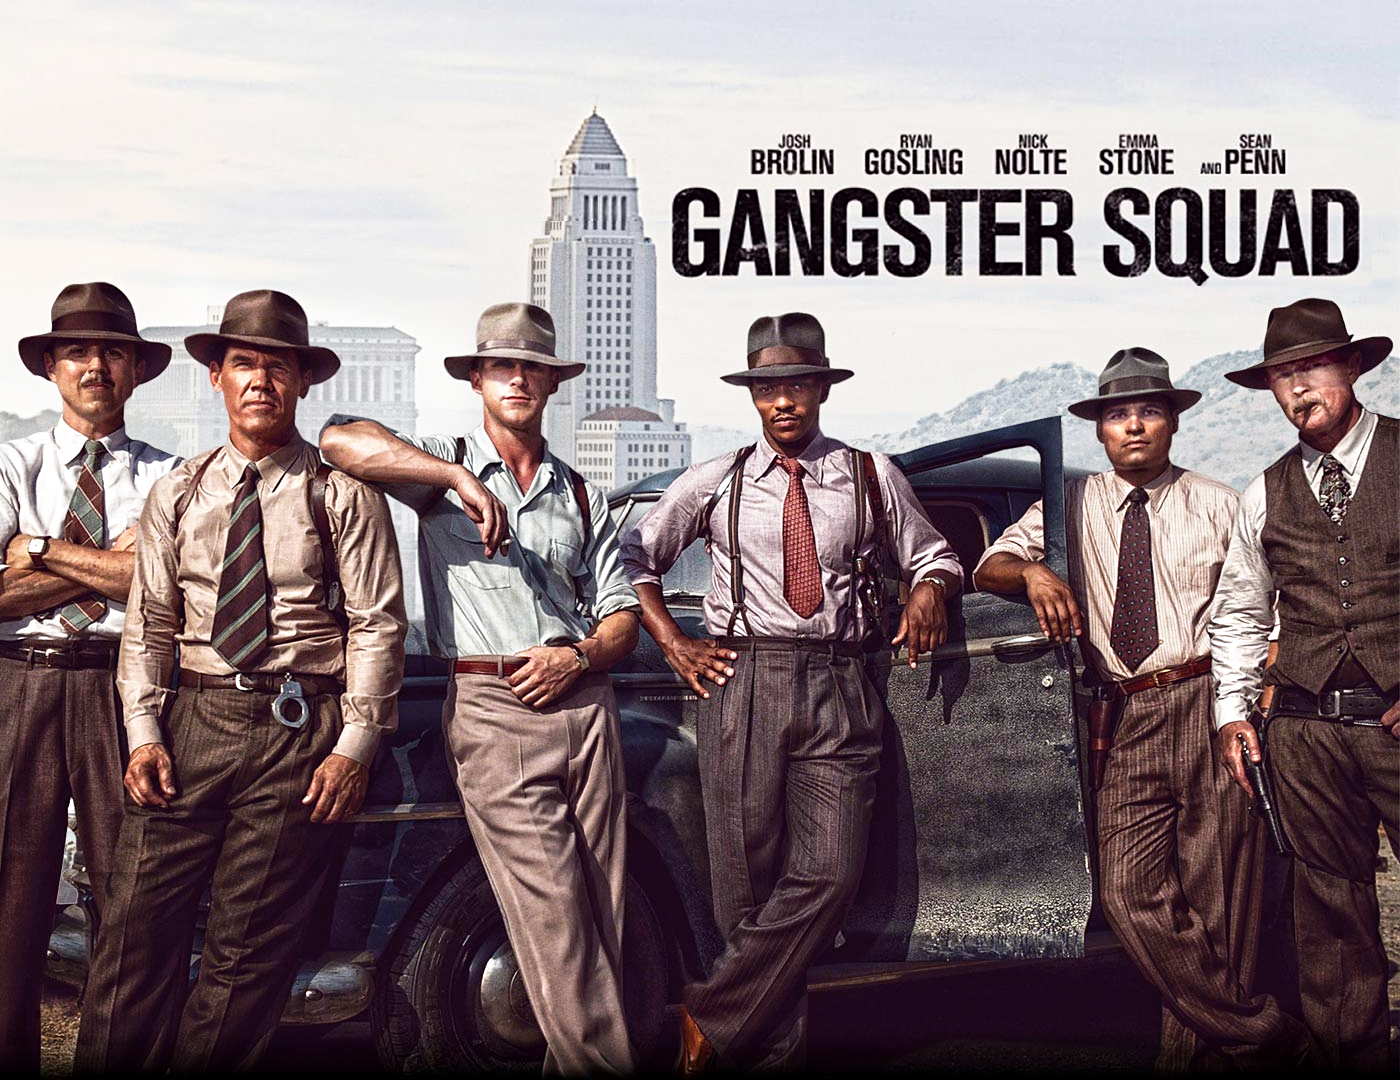 http://1.bp.blogspot.com/-UCYYiL0RVAY/UOG5oswN69I/AAAAAAAAL98/yVg1ltYGaFg/s1600/Gangster-Squad.jpg